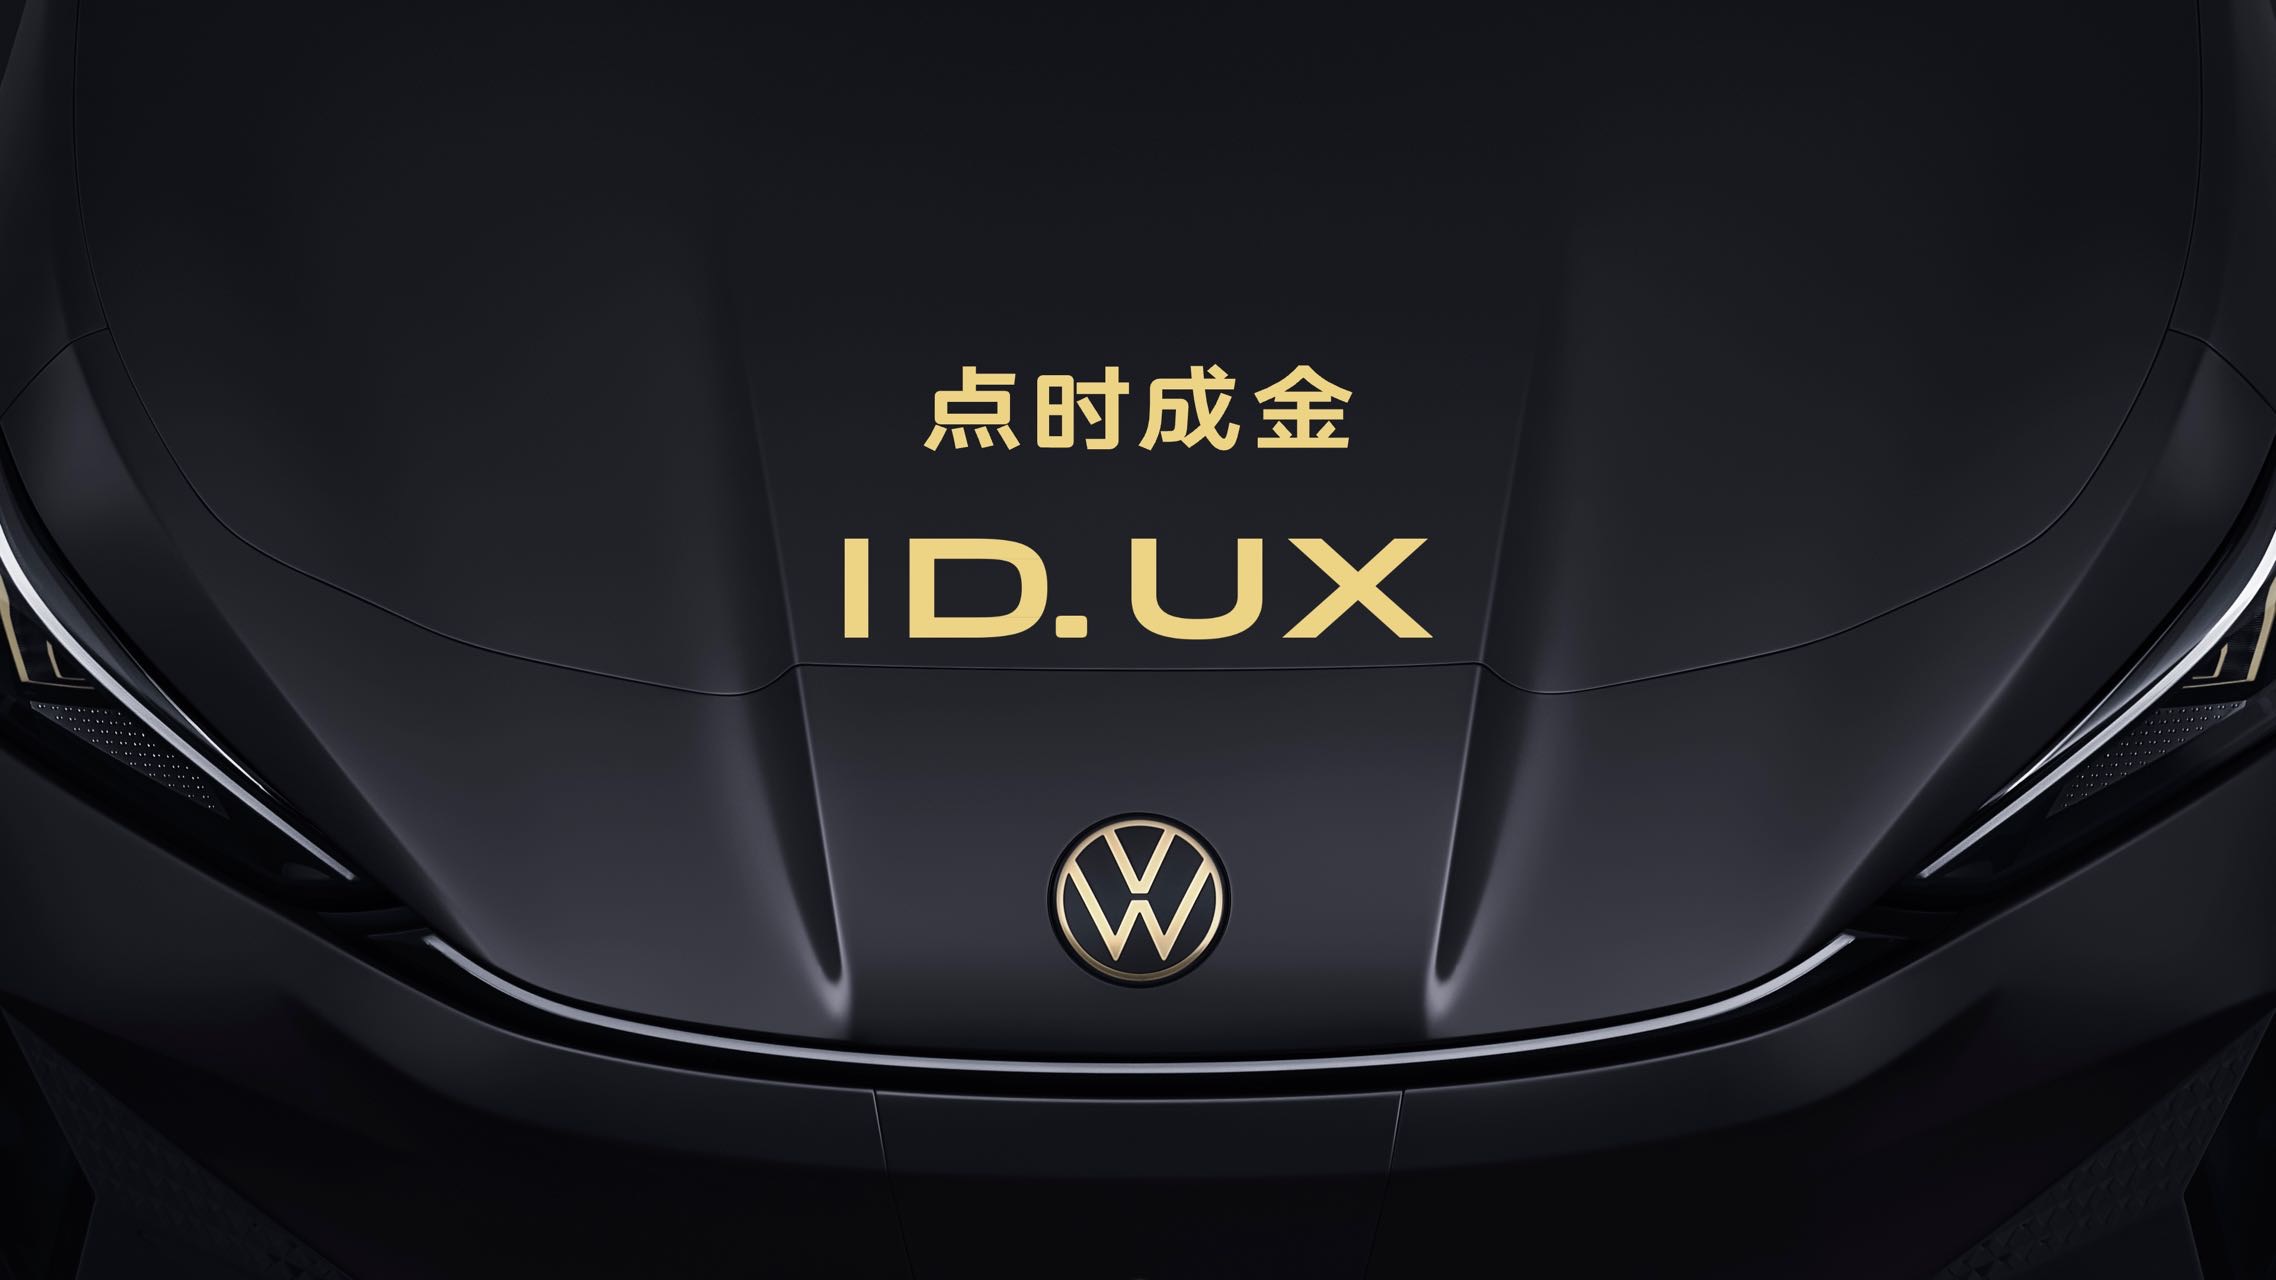 大眾汽車智能純電新品類ID.UX首發亮相